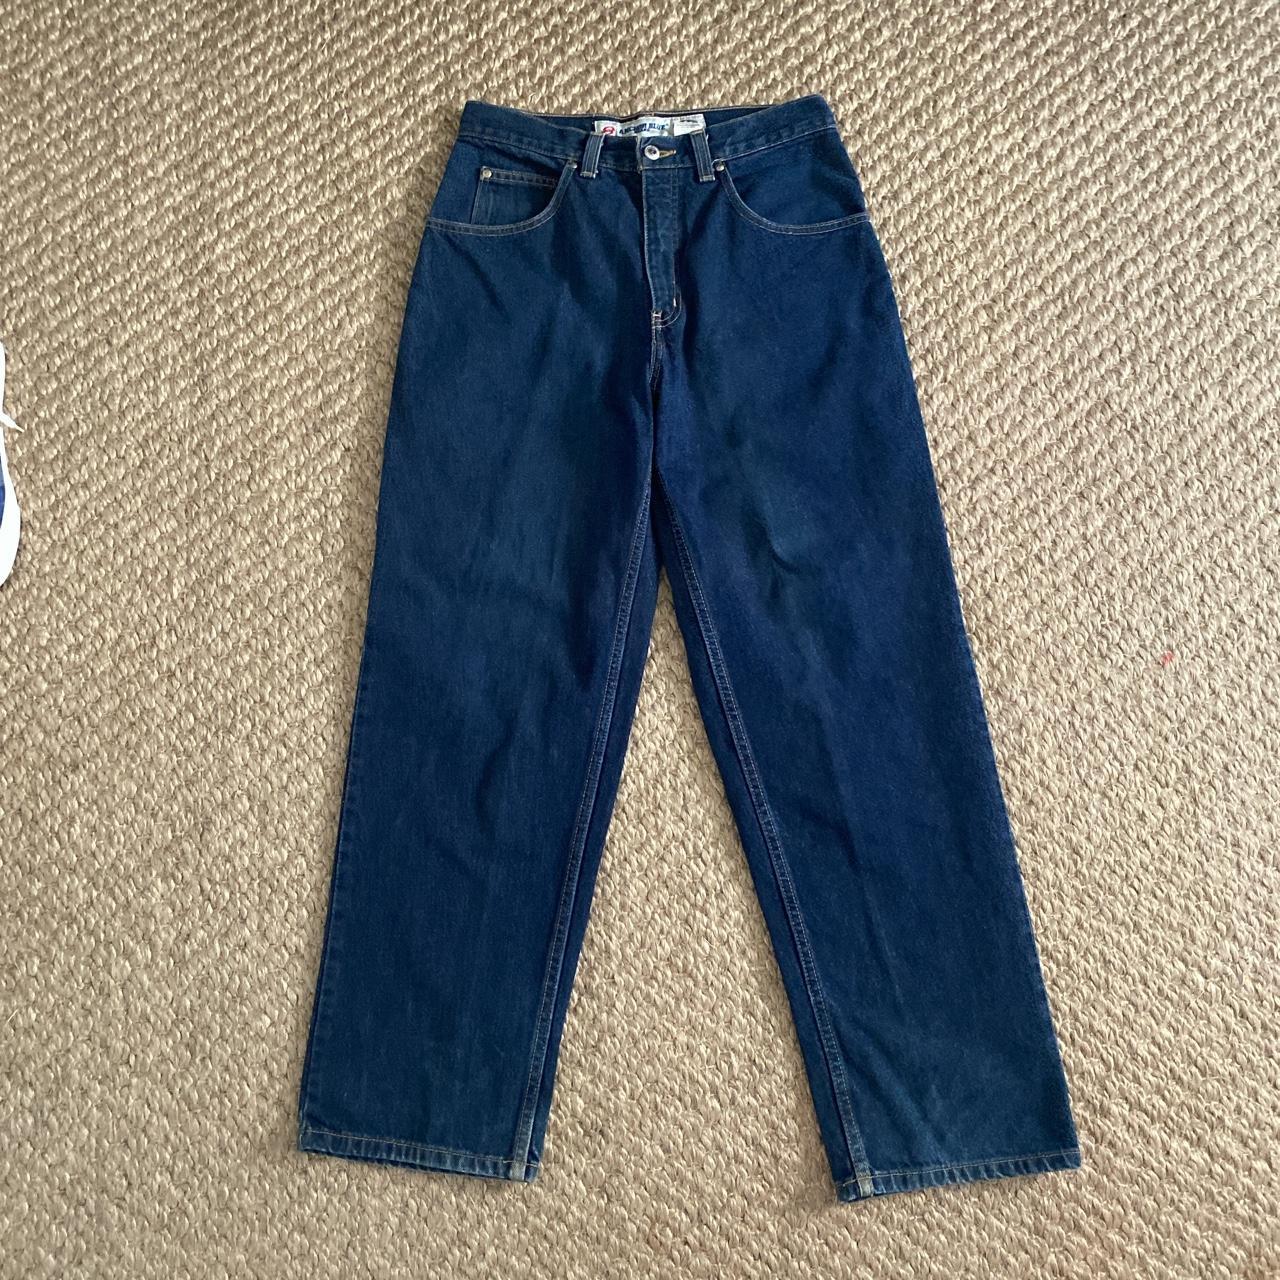 Anchor Blue Men's Blue Jeans | Depop